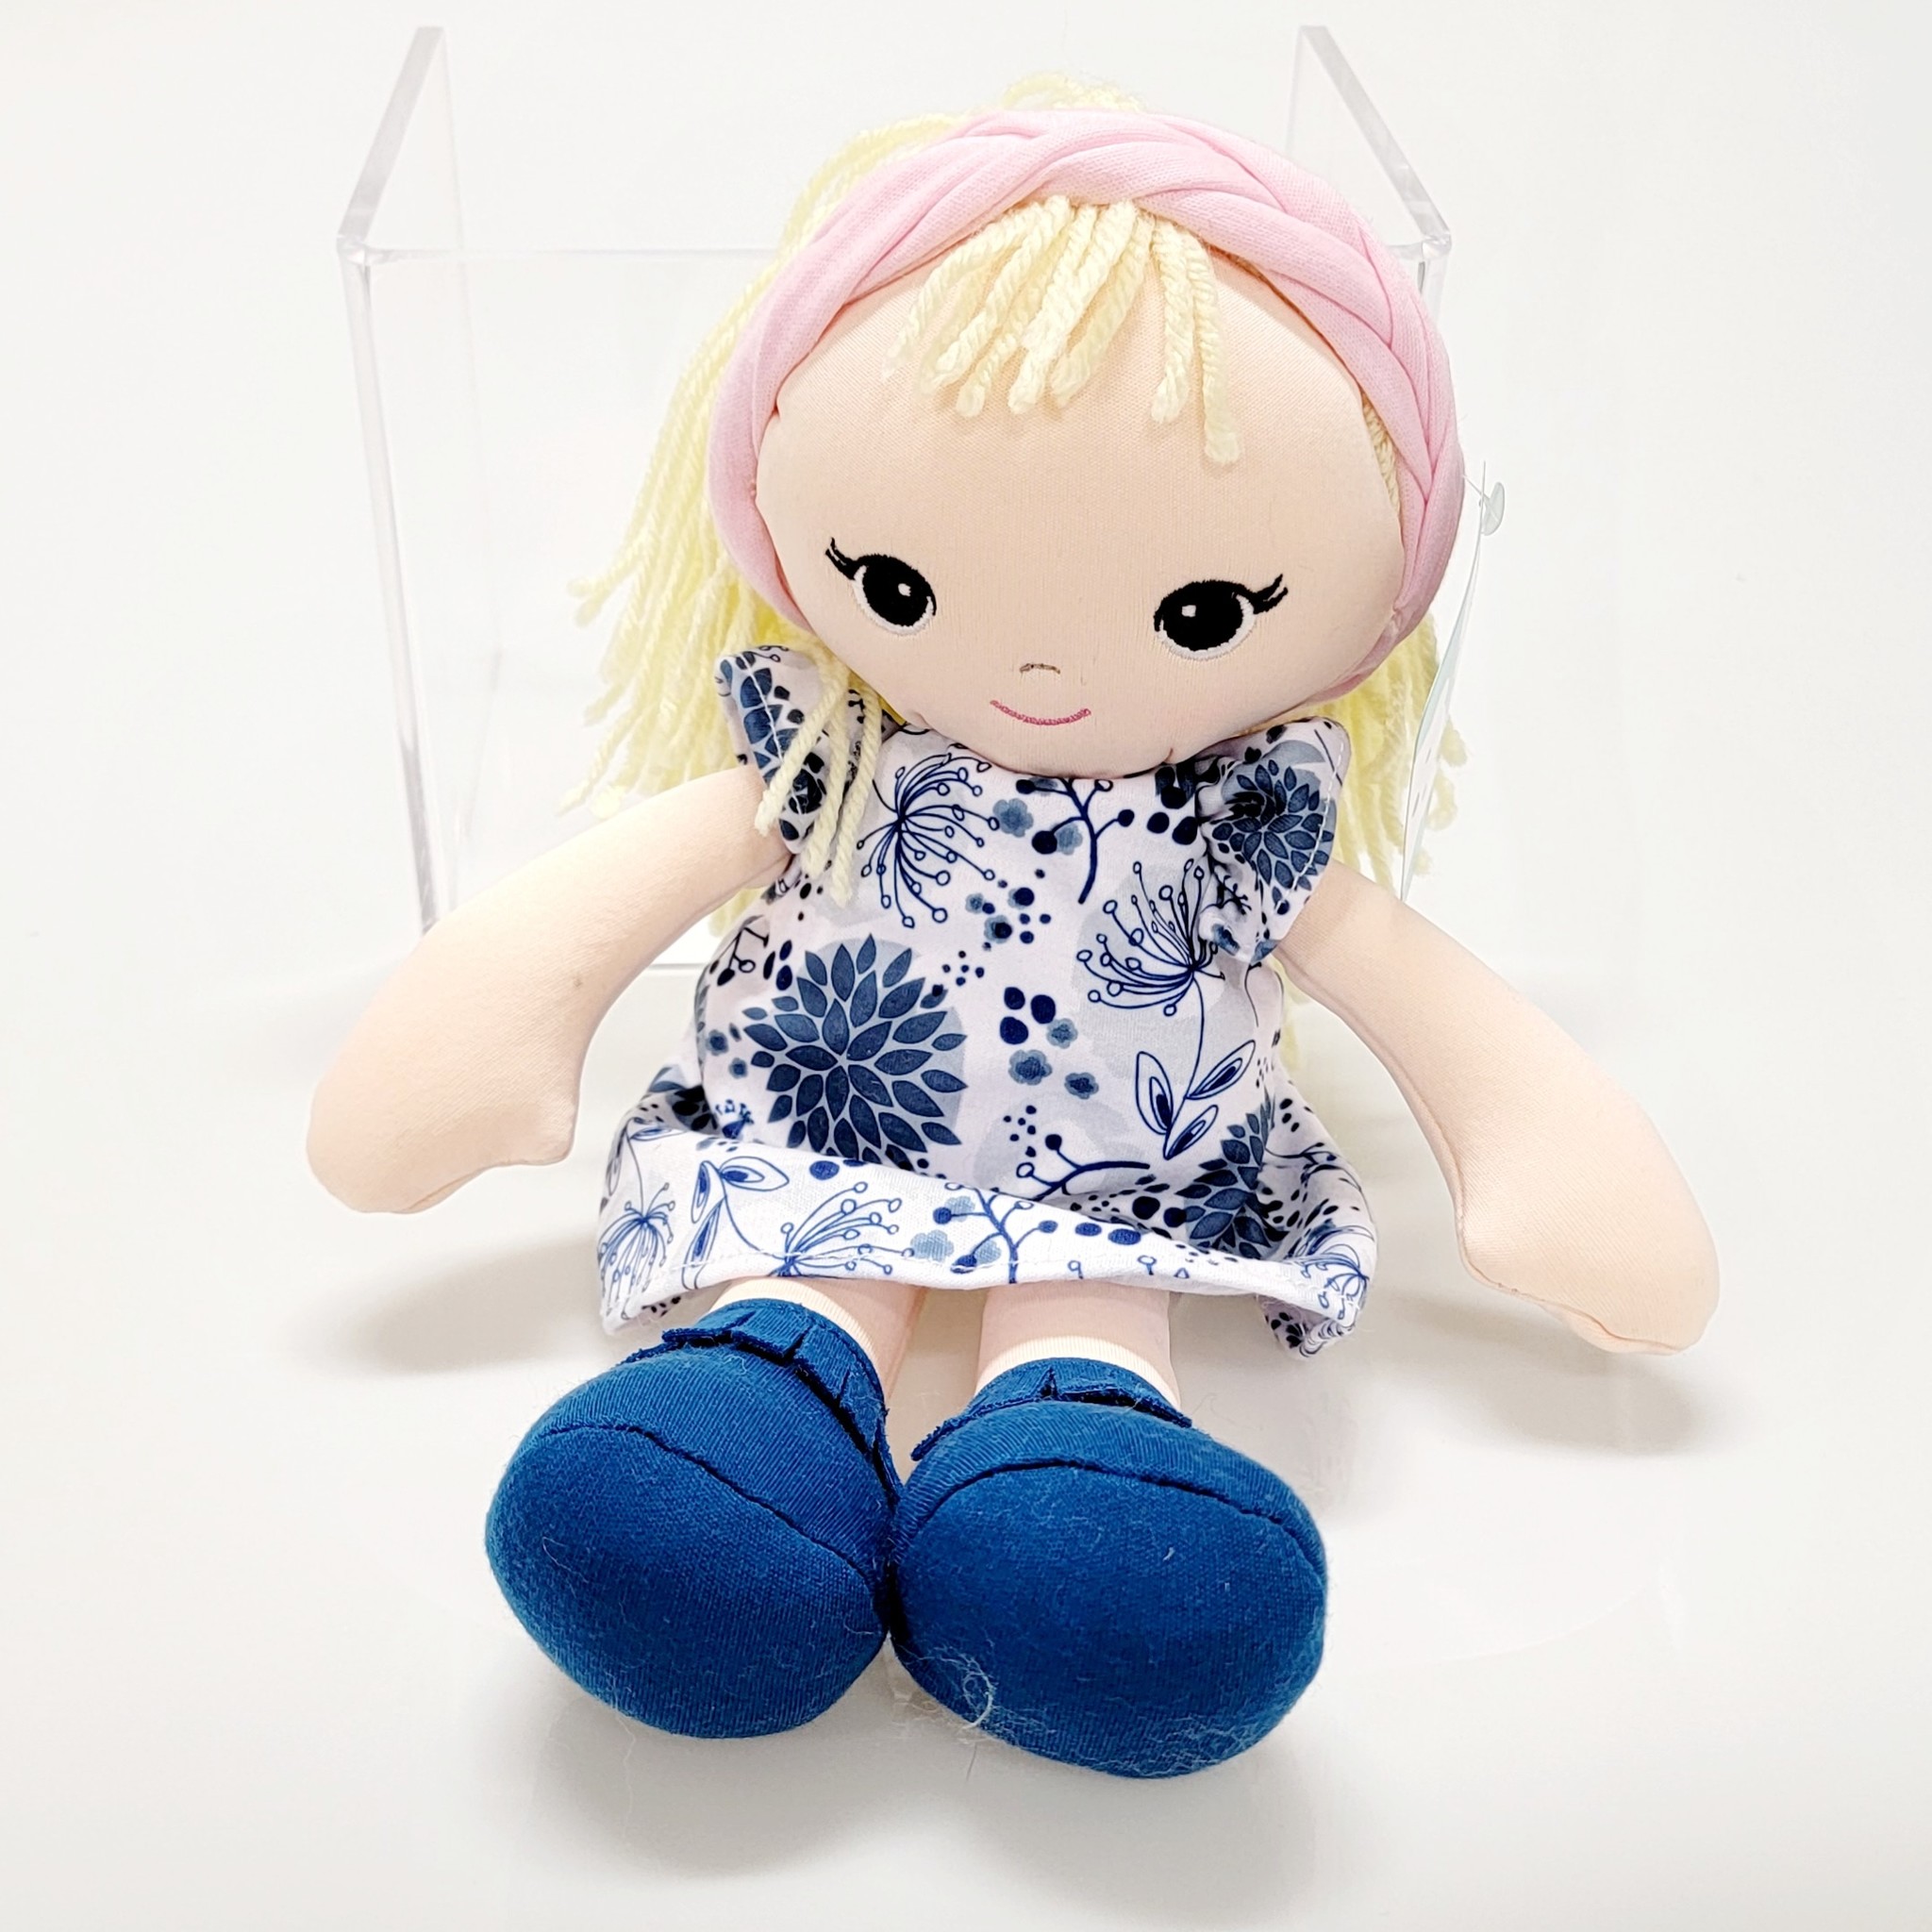 Gund Blonde 8" Toddler Doll